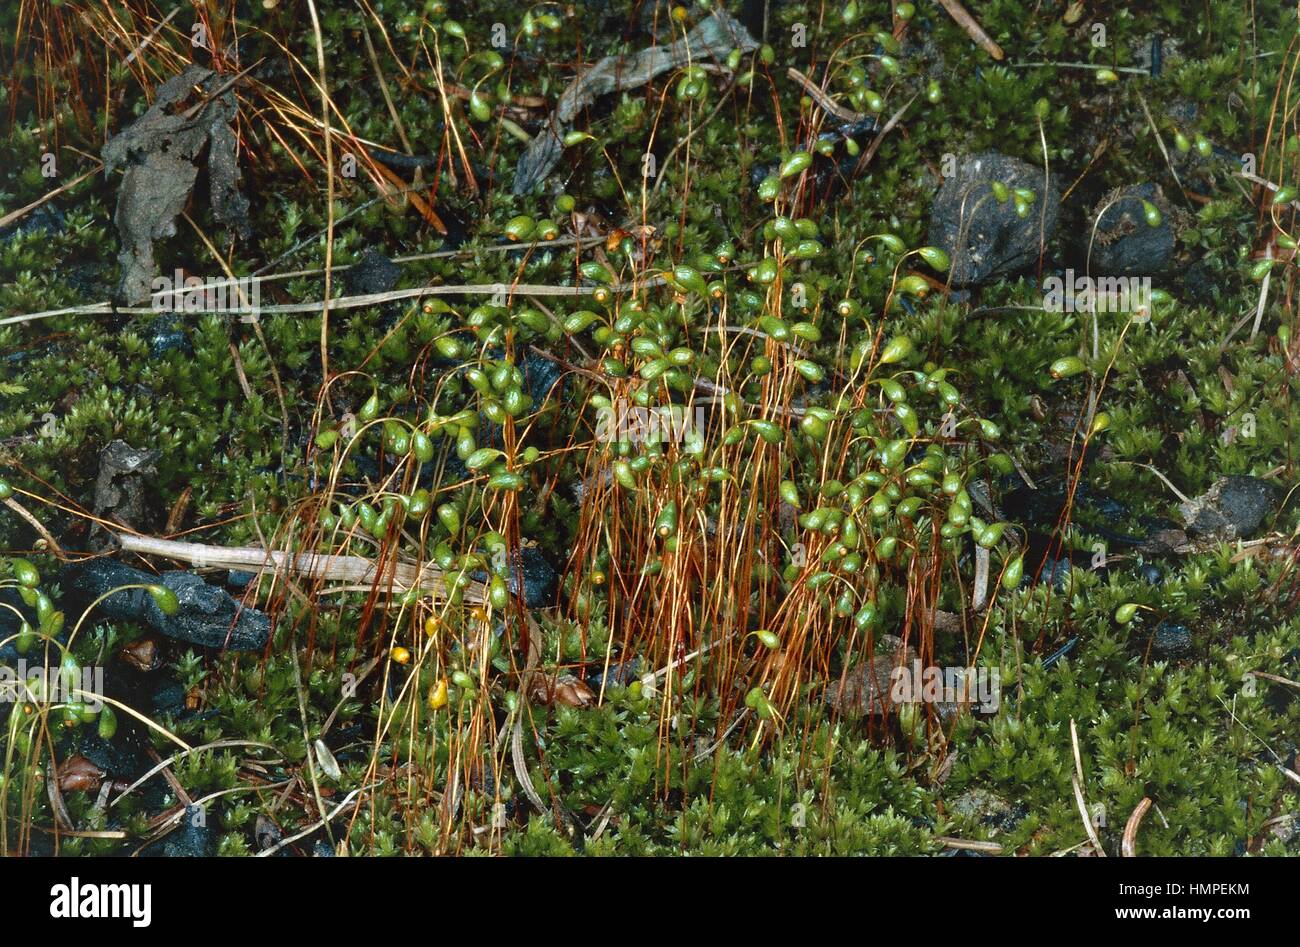 Bryum Moss (Bryum sp), Bryaceae. Stock Photo